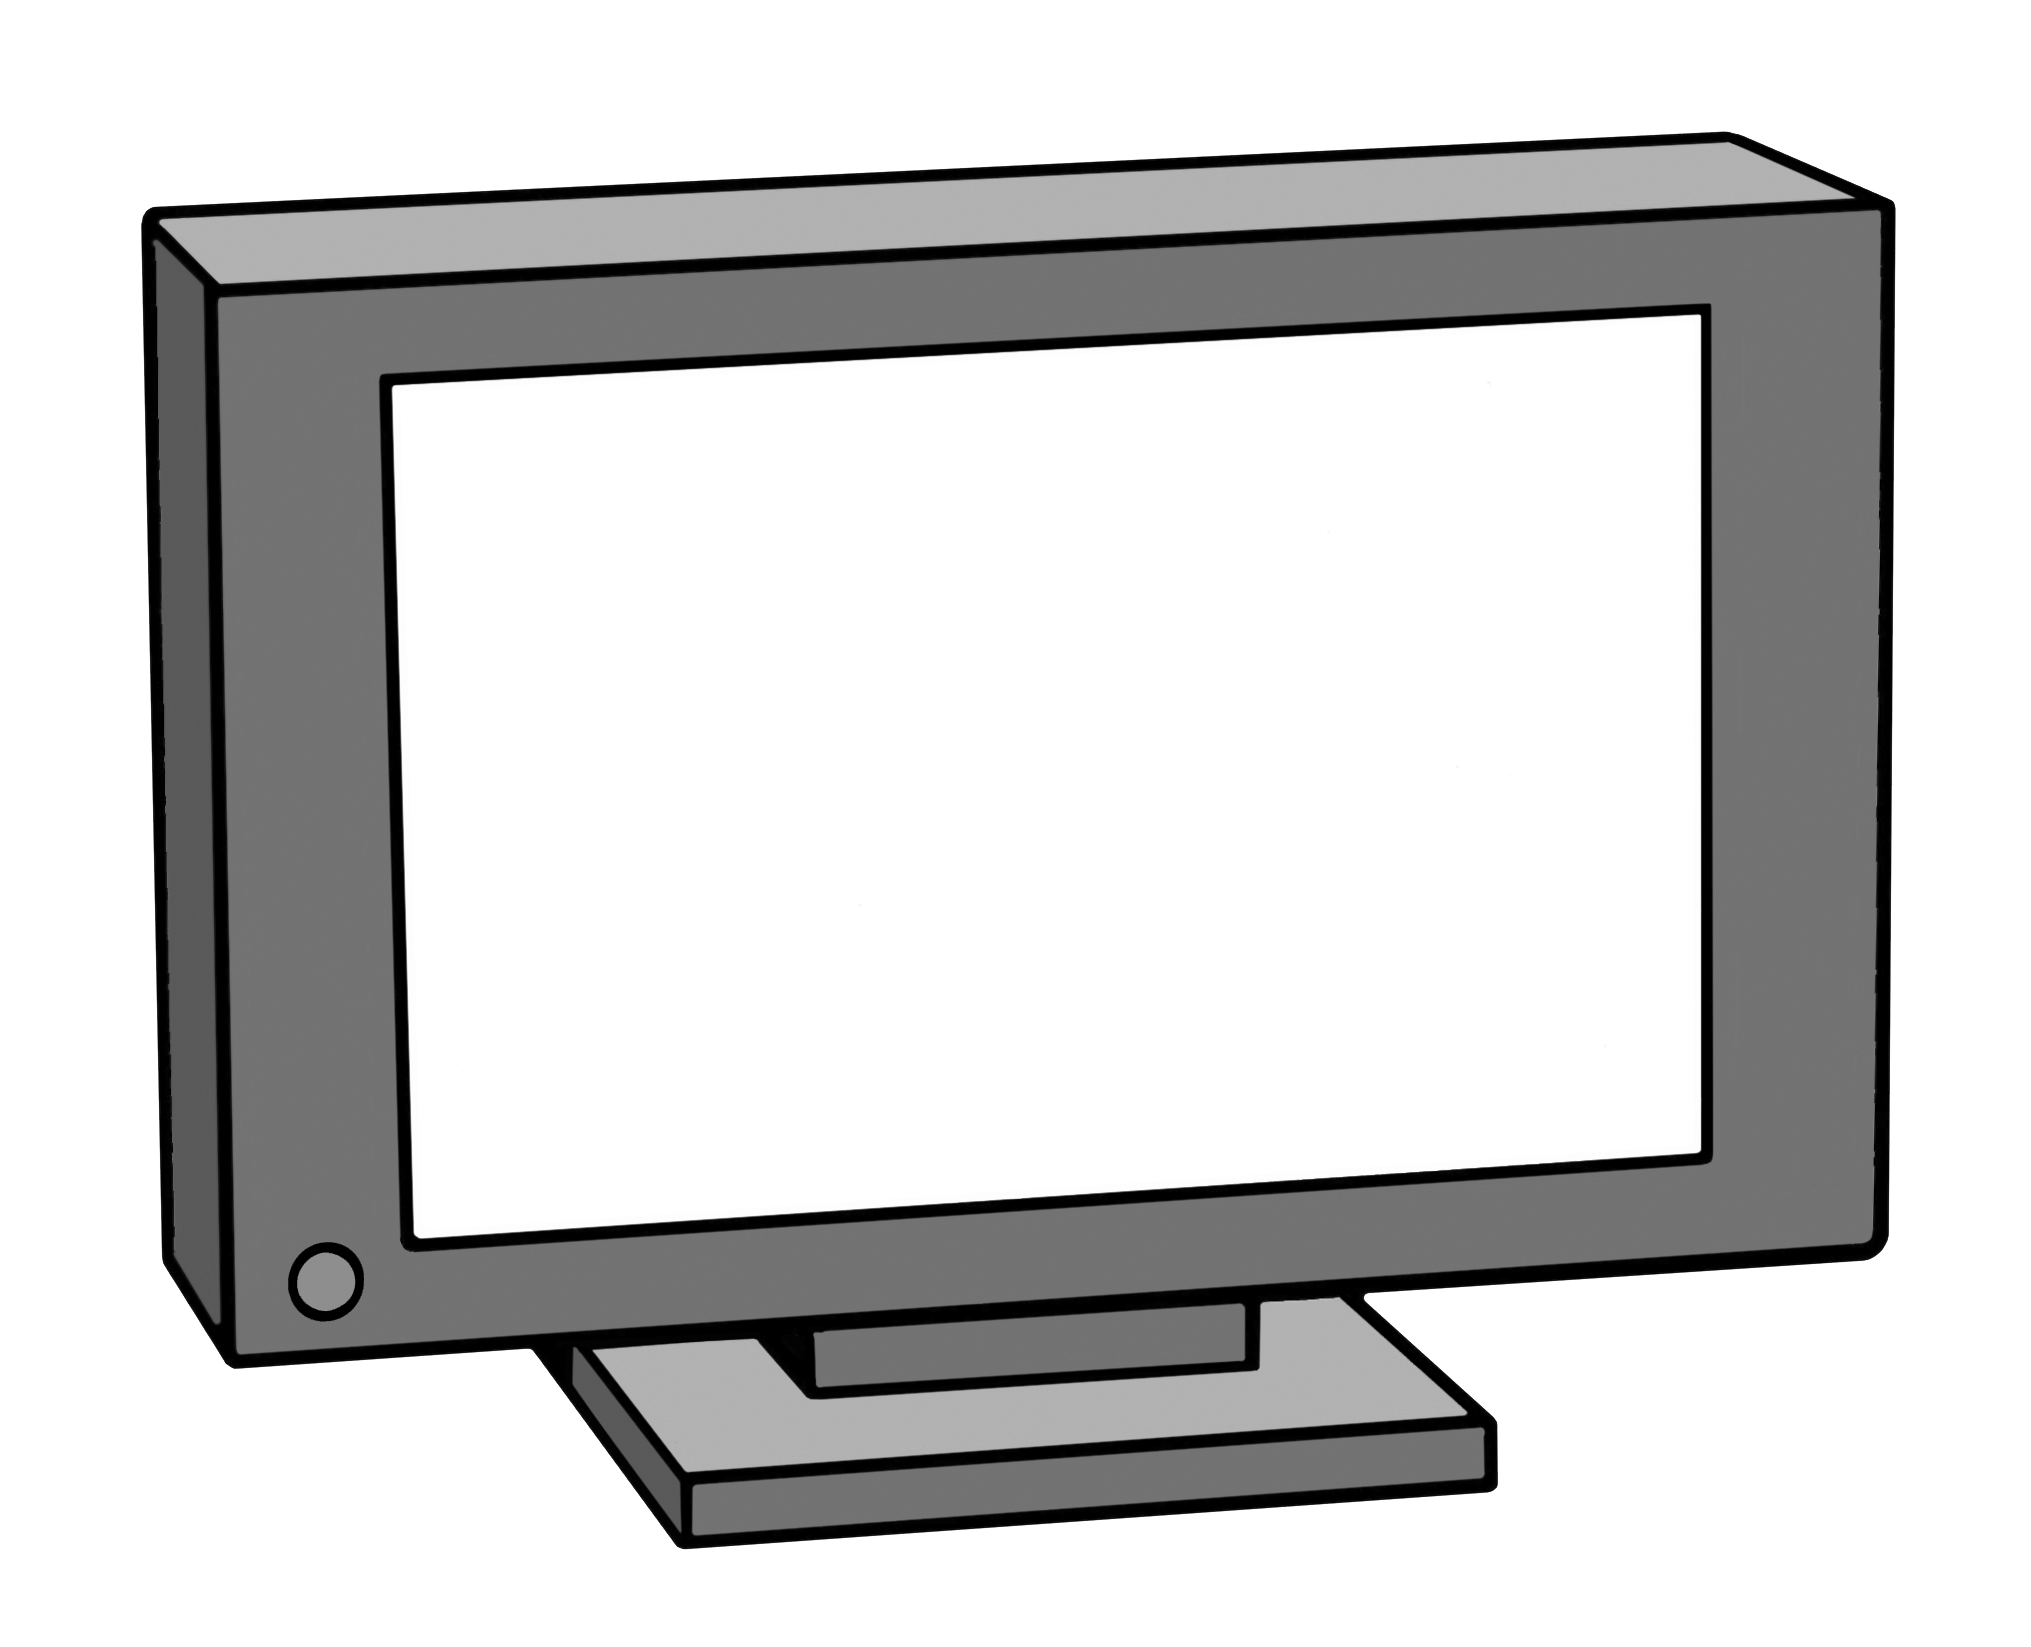 Fernseher (Zeichnung)